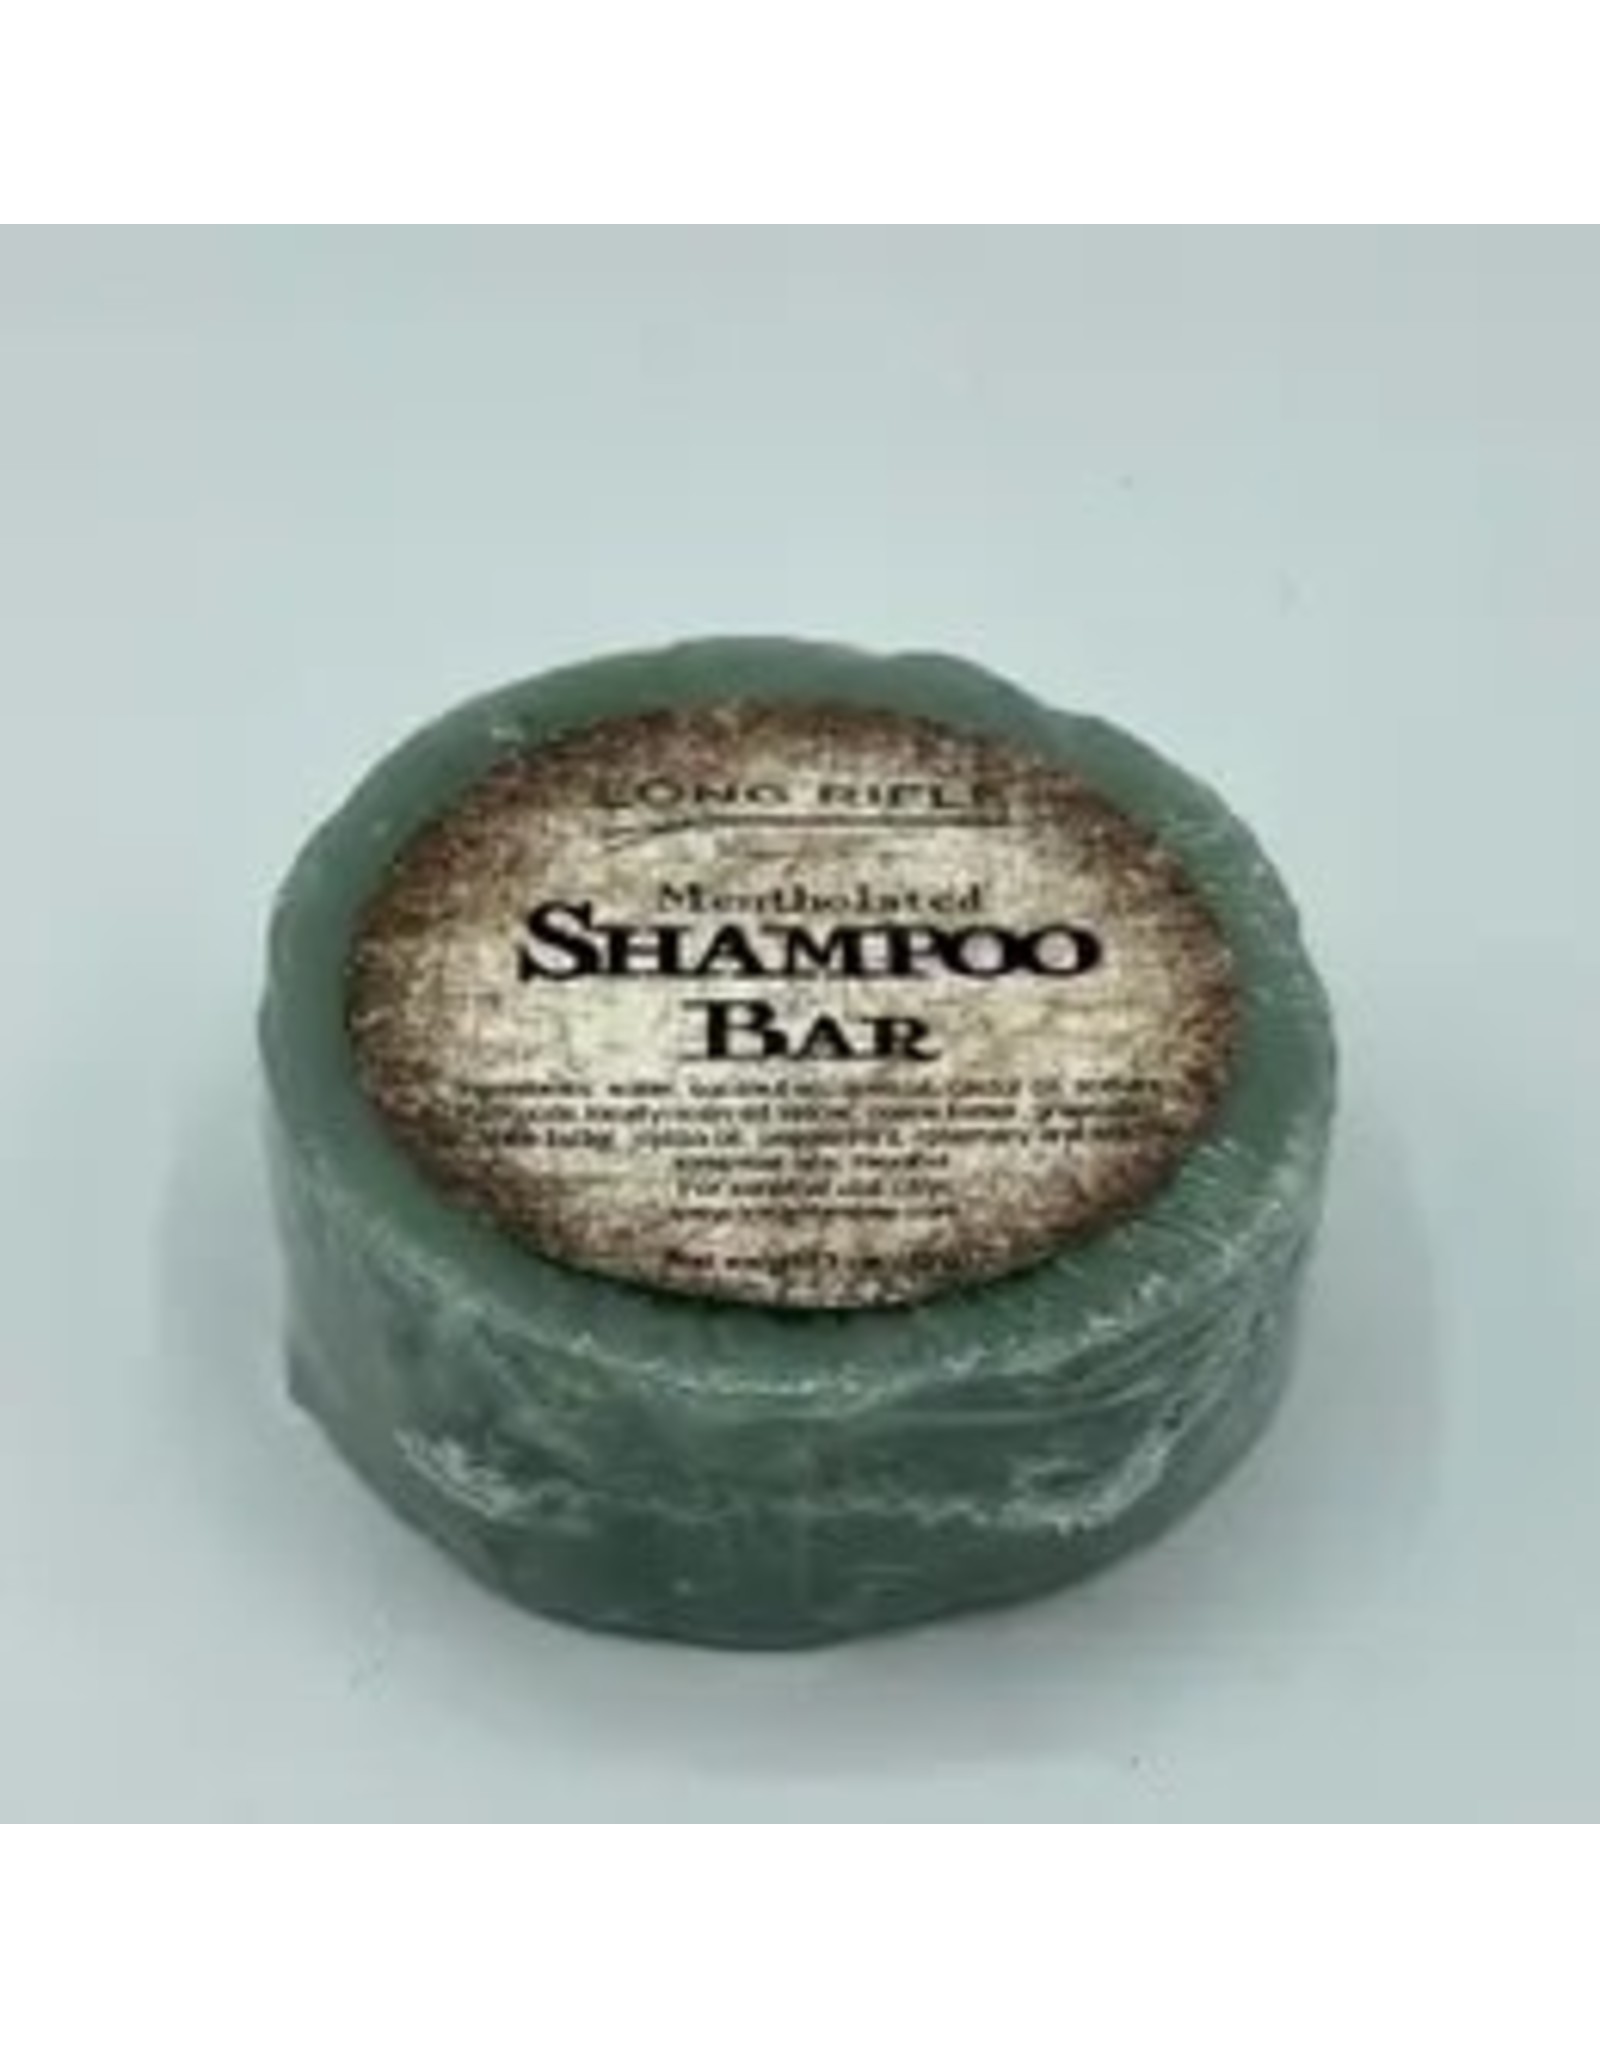 '76 Mens Mercantile All Natural Shampoo Bar